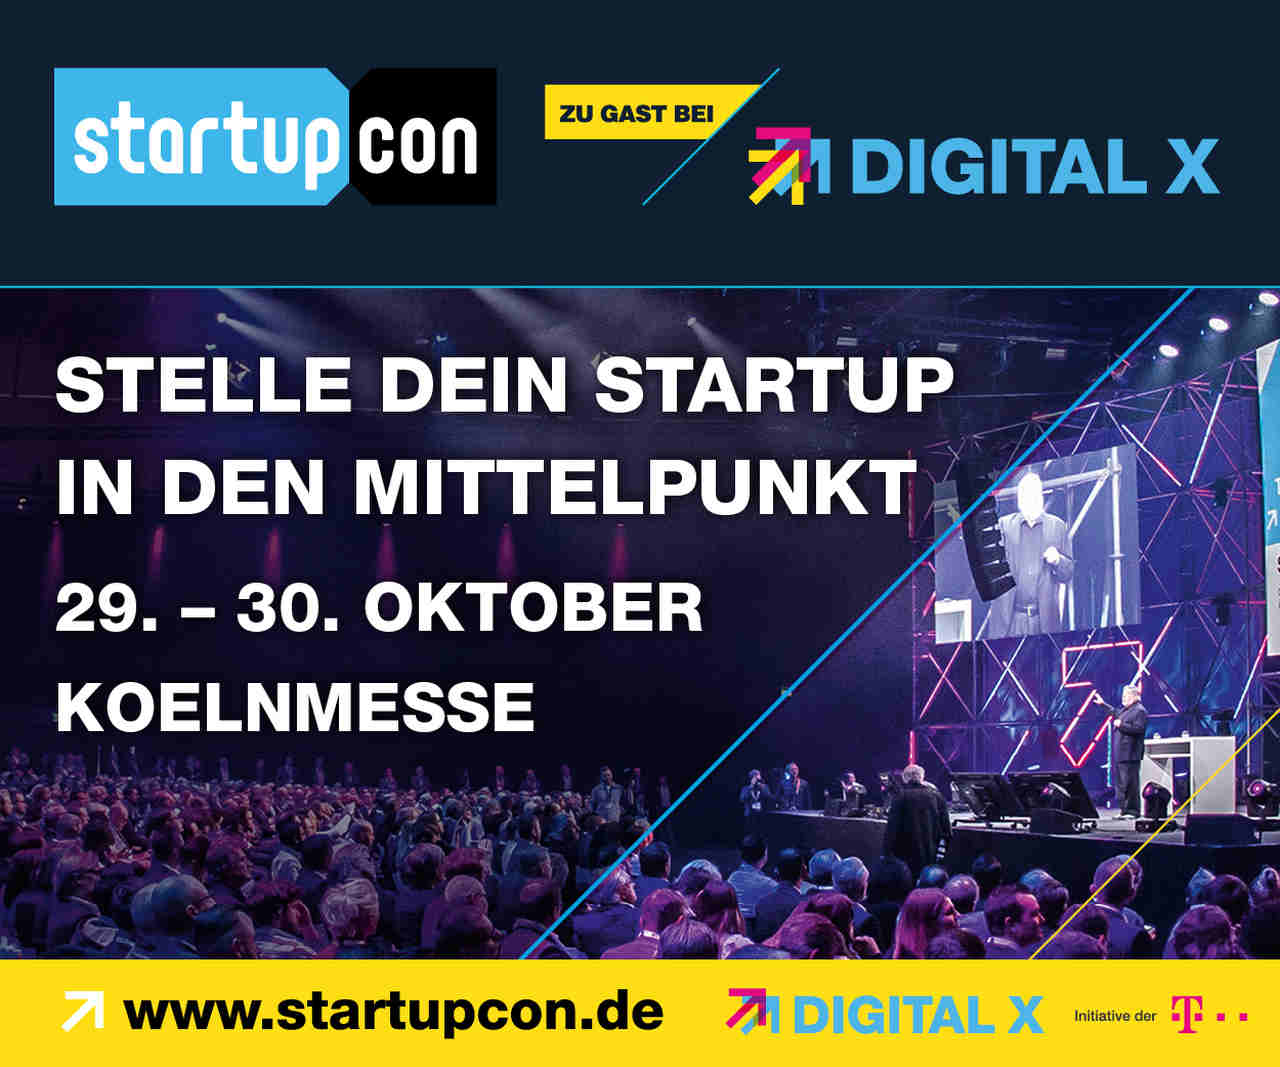 StartupCon 2019 - Der Countdown läuft!